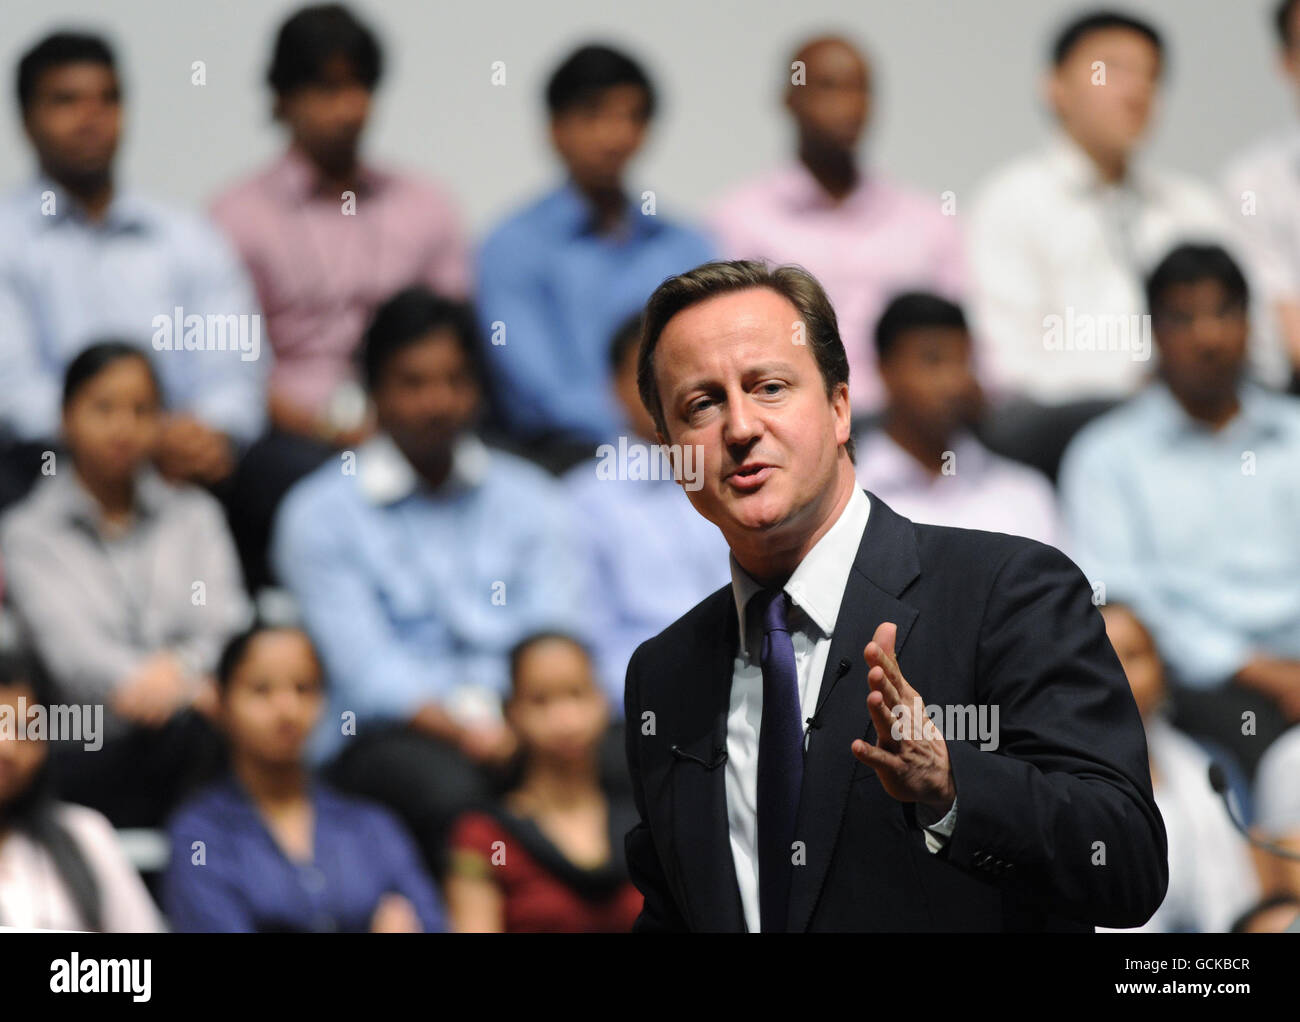 Le Premier ministre David Cameron s'adresse aux employés et aux invités d'Infosys à Bangalore, au cours de sa visite de trois jours en Inde. Banque D'Images